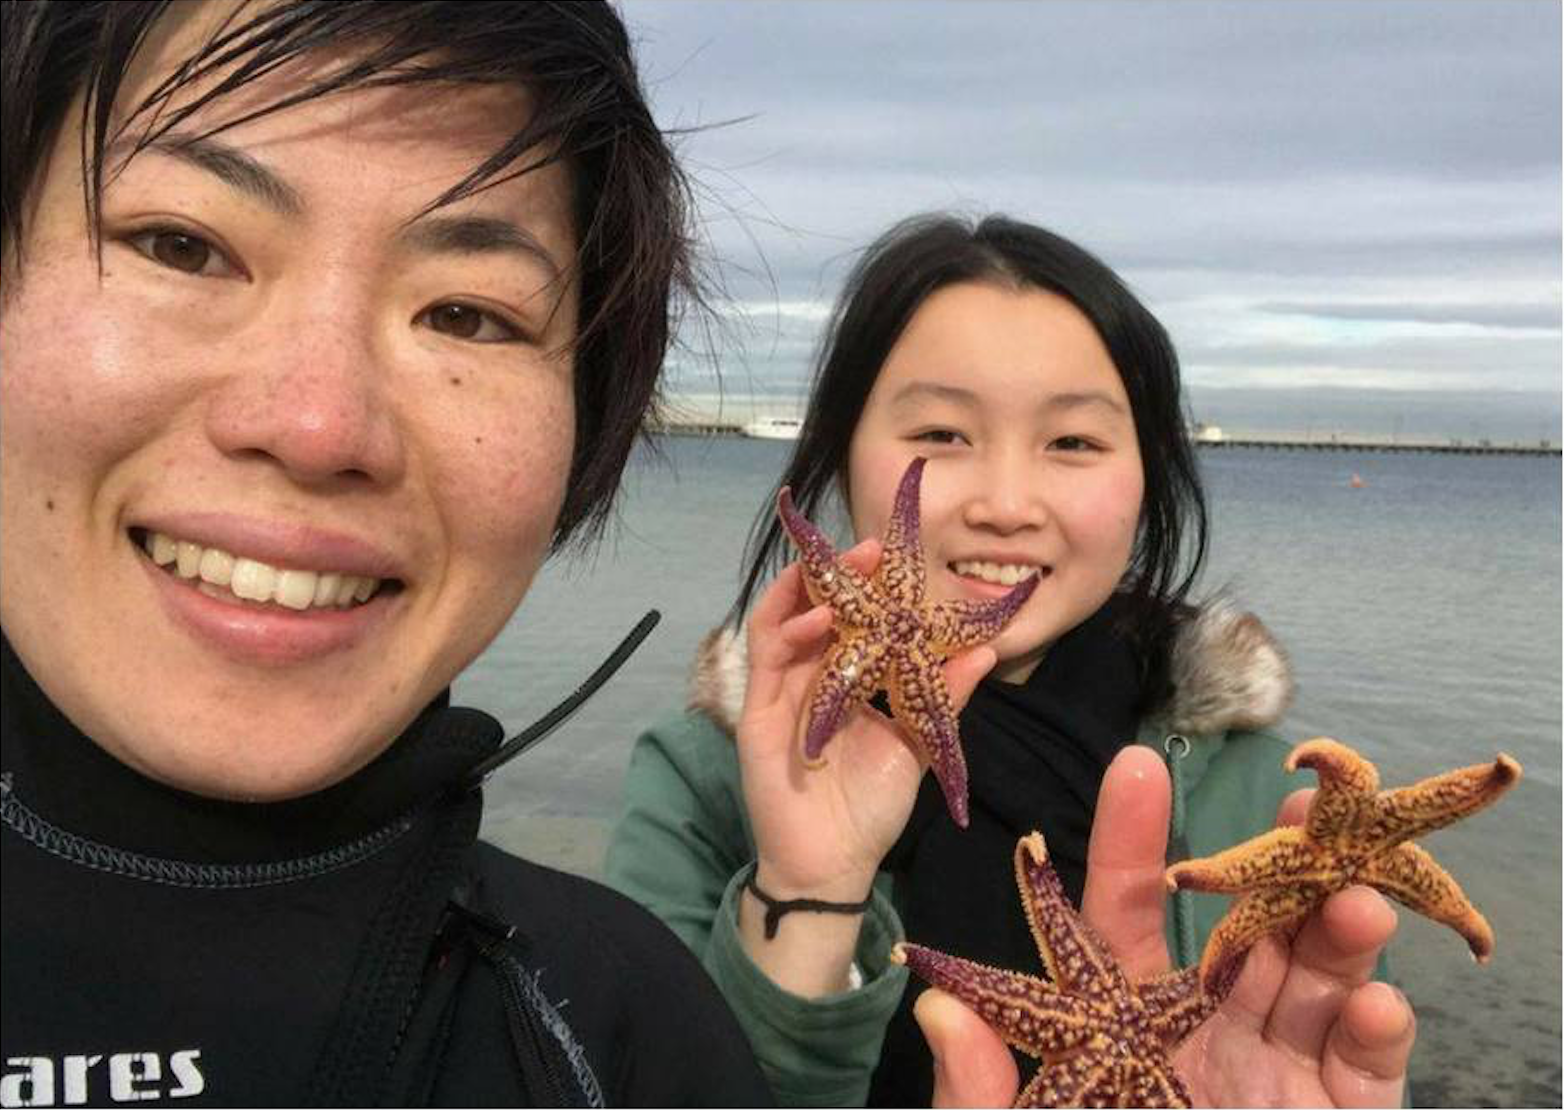 Two women holding starfish